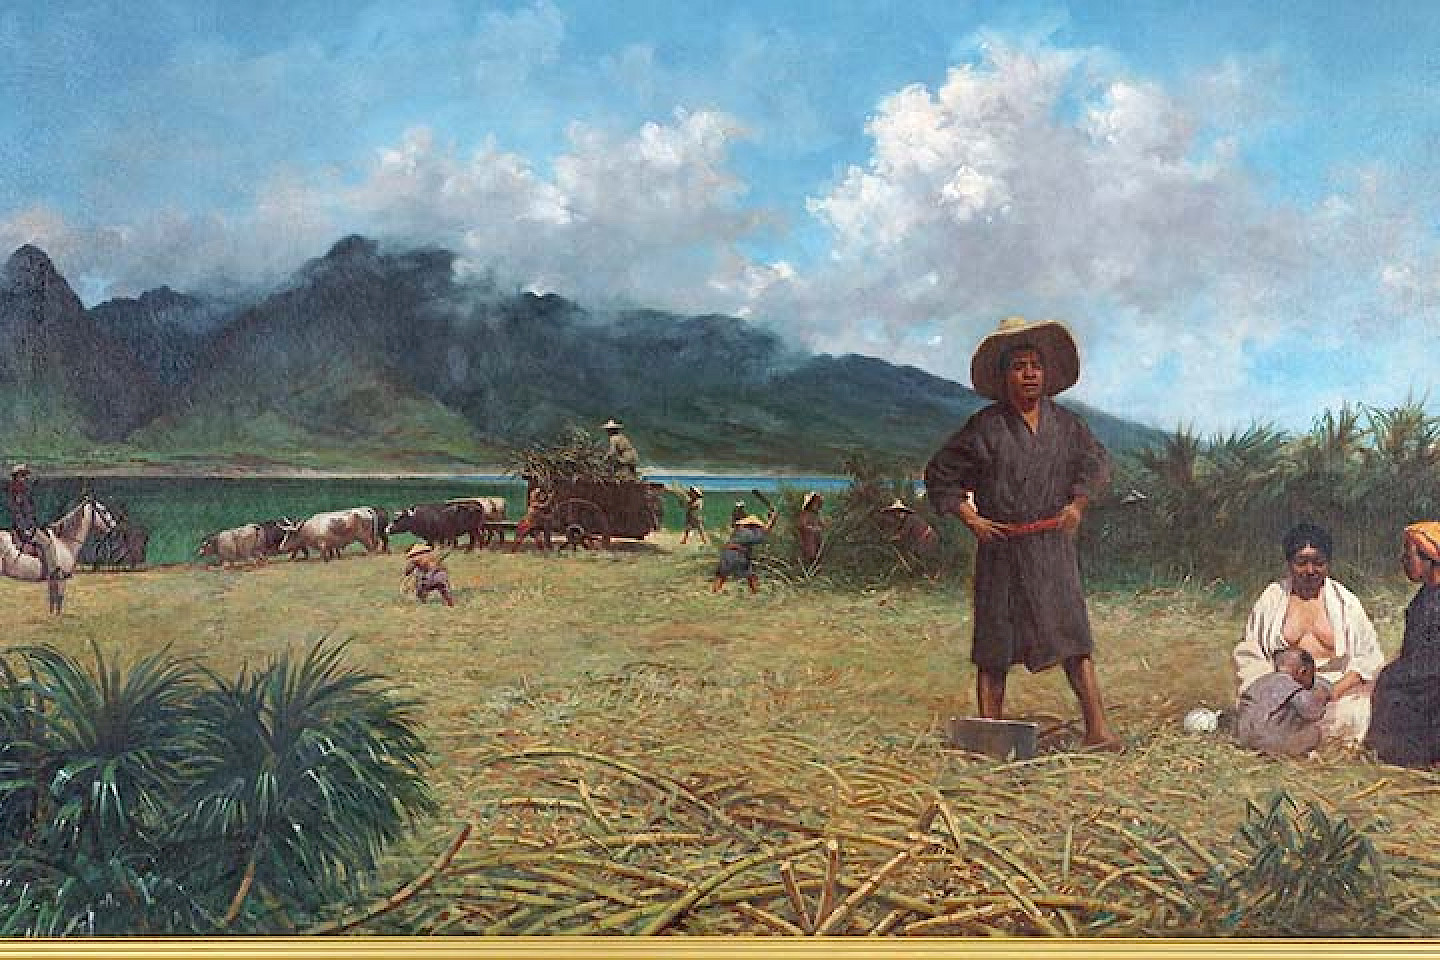 Titelbild: Joseph Dwight Strong, Japanische Arbeiter auf Zuckerplantagen, Spreckelsville/Maui, 1885, Öl auf Leinwand, Sammlung der Mitsui Sugar Co., Ltd. in Japan.